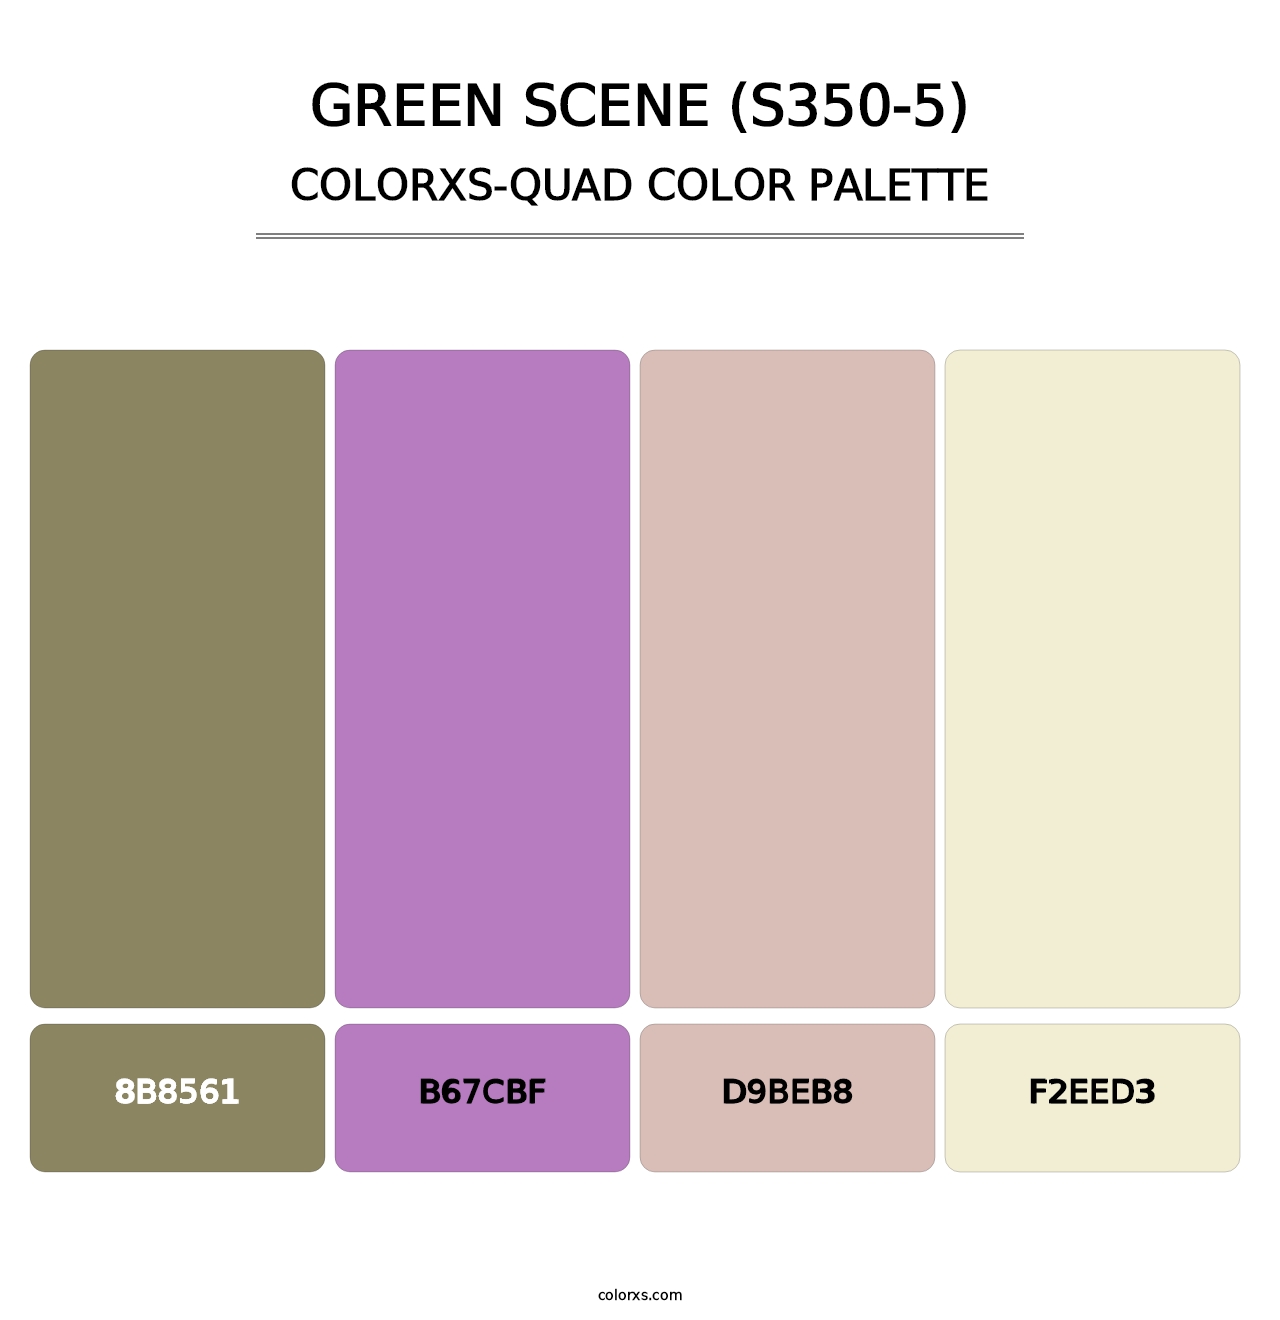 Green Scene (S350-5) - Colorxs Quad Palette